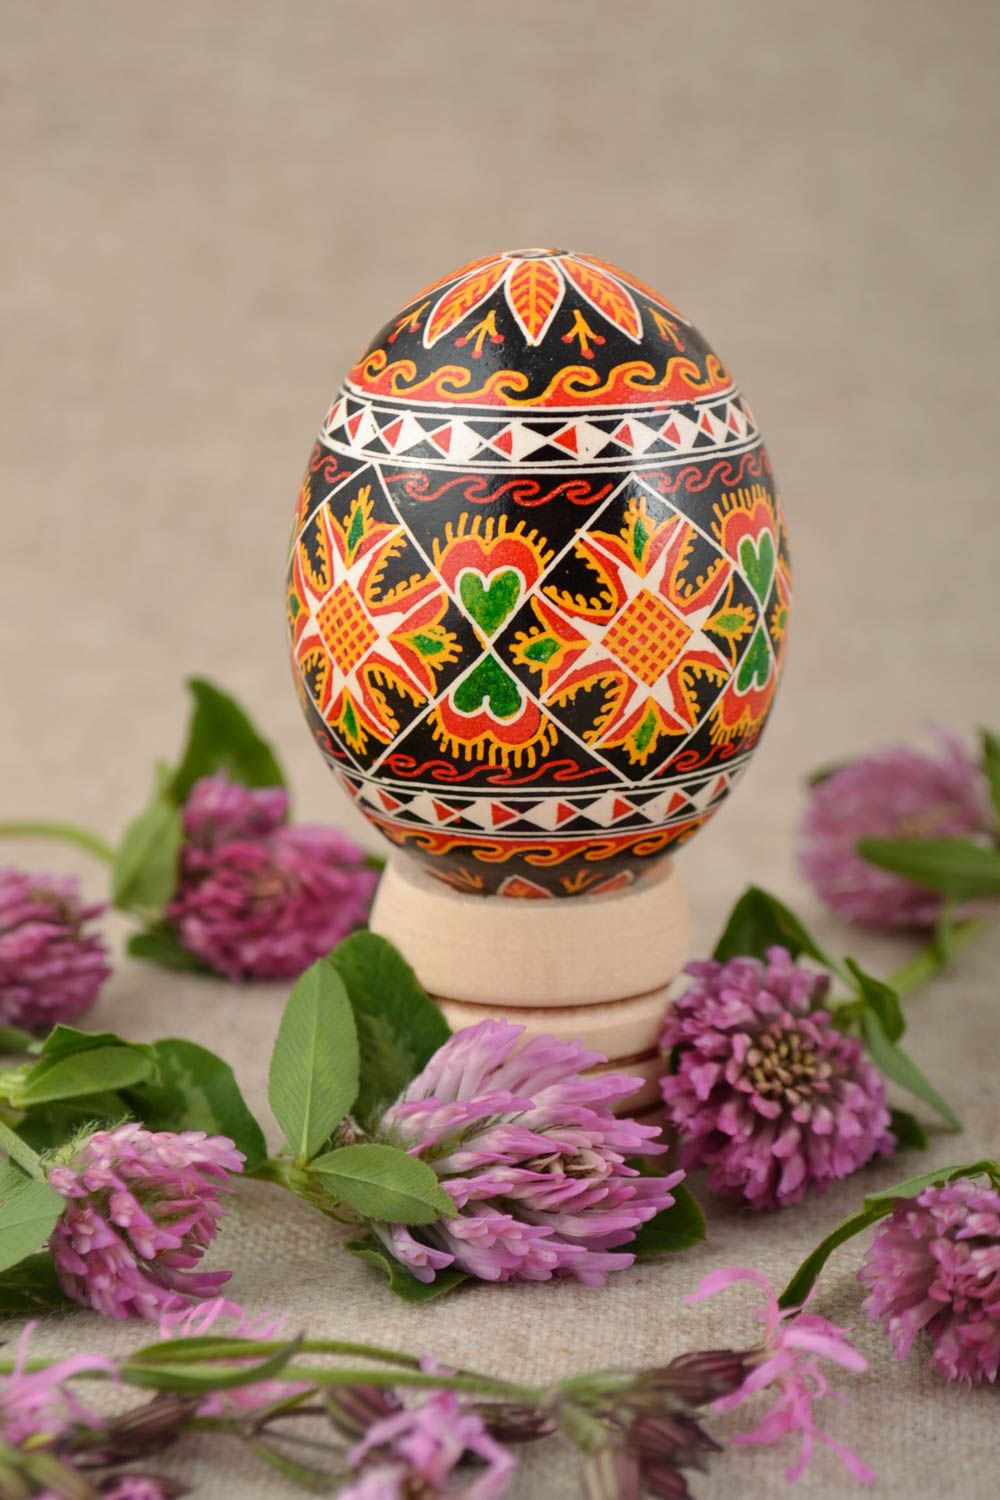 Яркое и красивое пасхальное яйцо расписанное акриловыми красками ручной работы фото 1